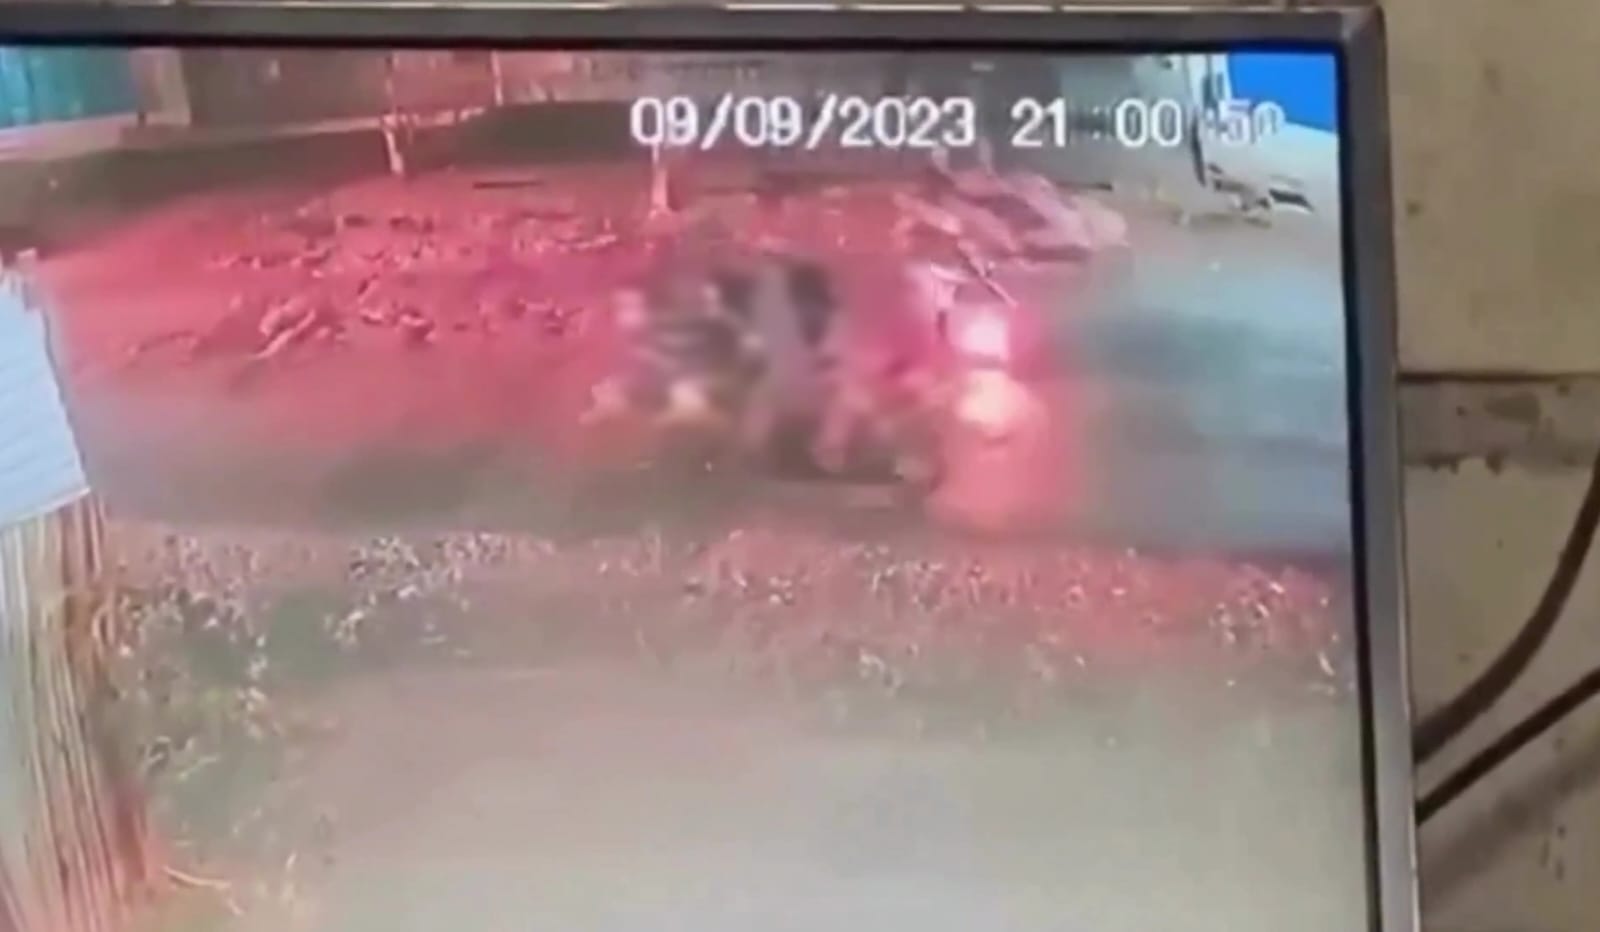 Penampakan pelaku pemukulan menggunakan tongkat baseball di Rancaekek, Kabupaten Bandung melalui rekaman CCTV.